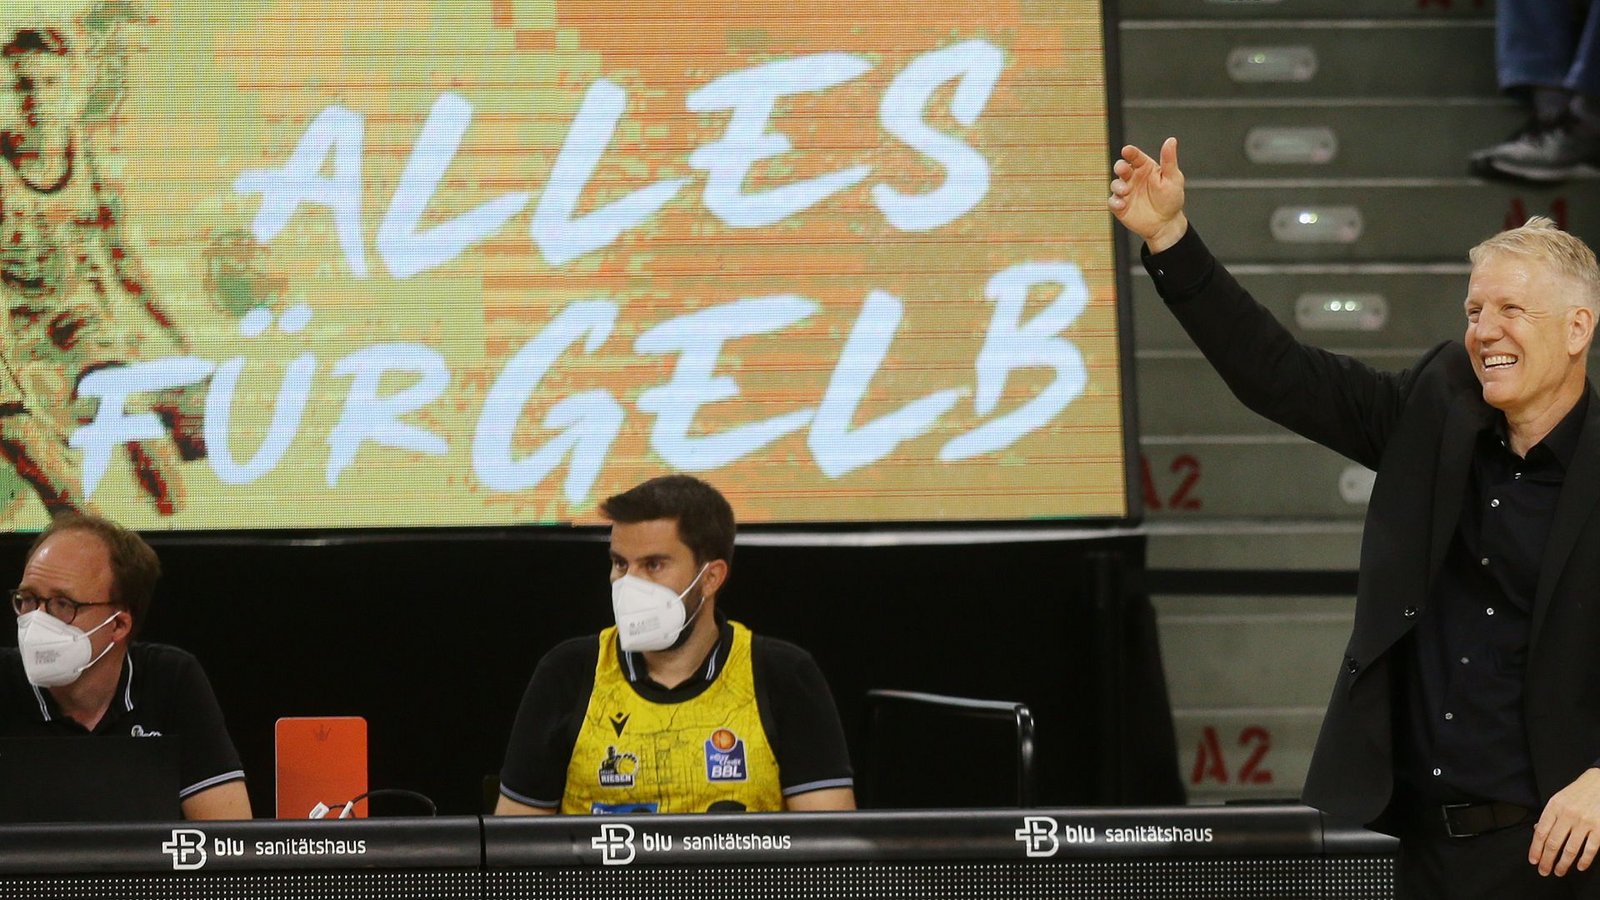 Alles für Gelb, lautet das Motto der Riesen – aber auch für alles Geld?Foto: Pressefoto Baumann/Hansjürgen Britsch